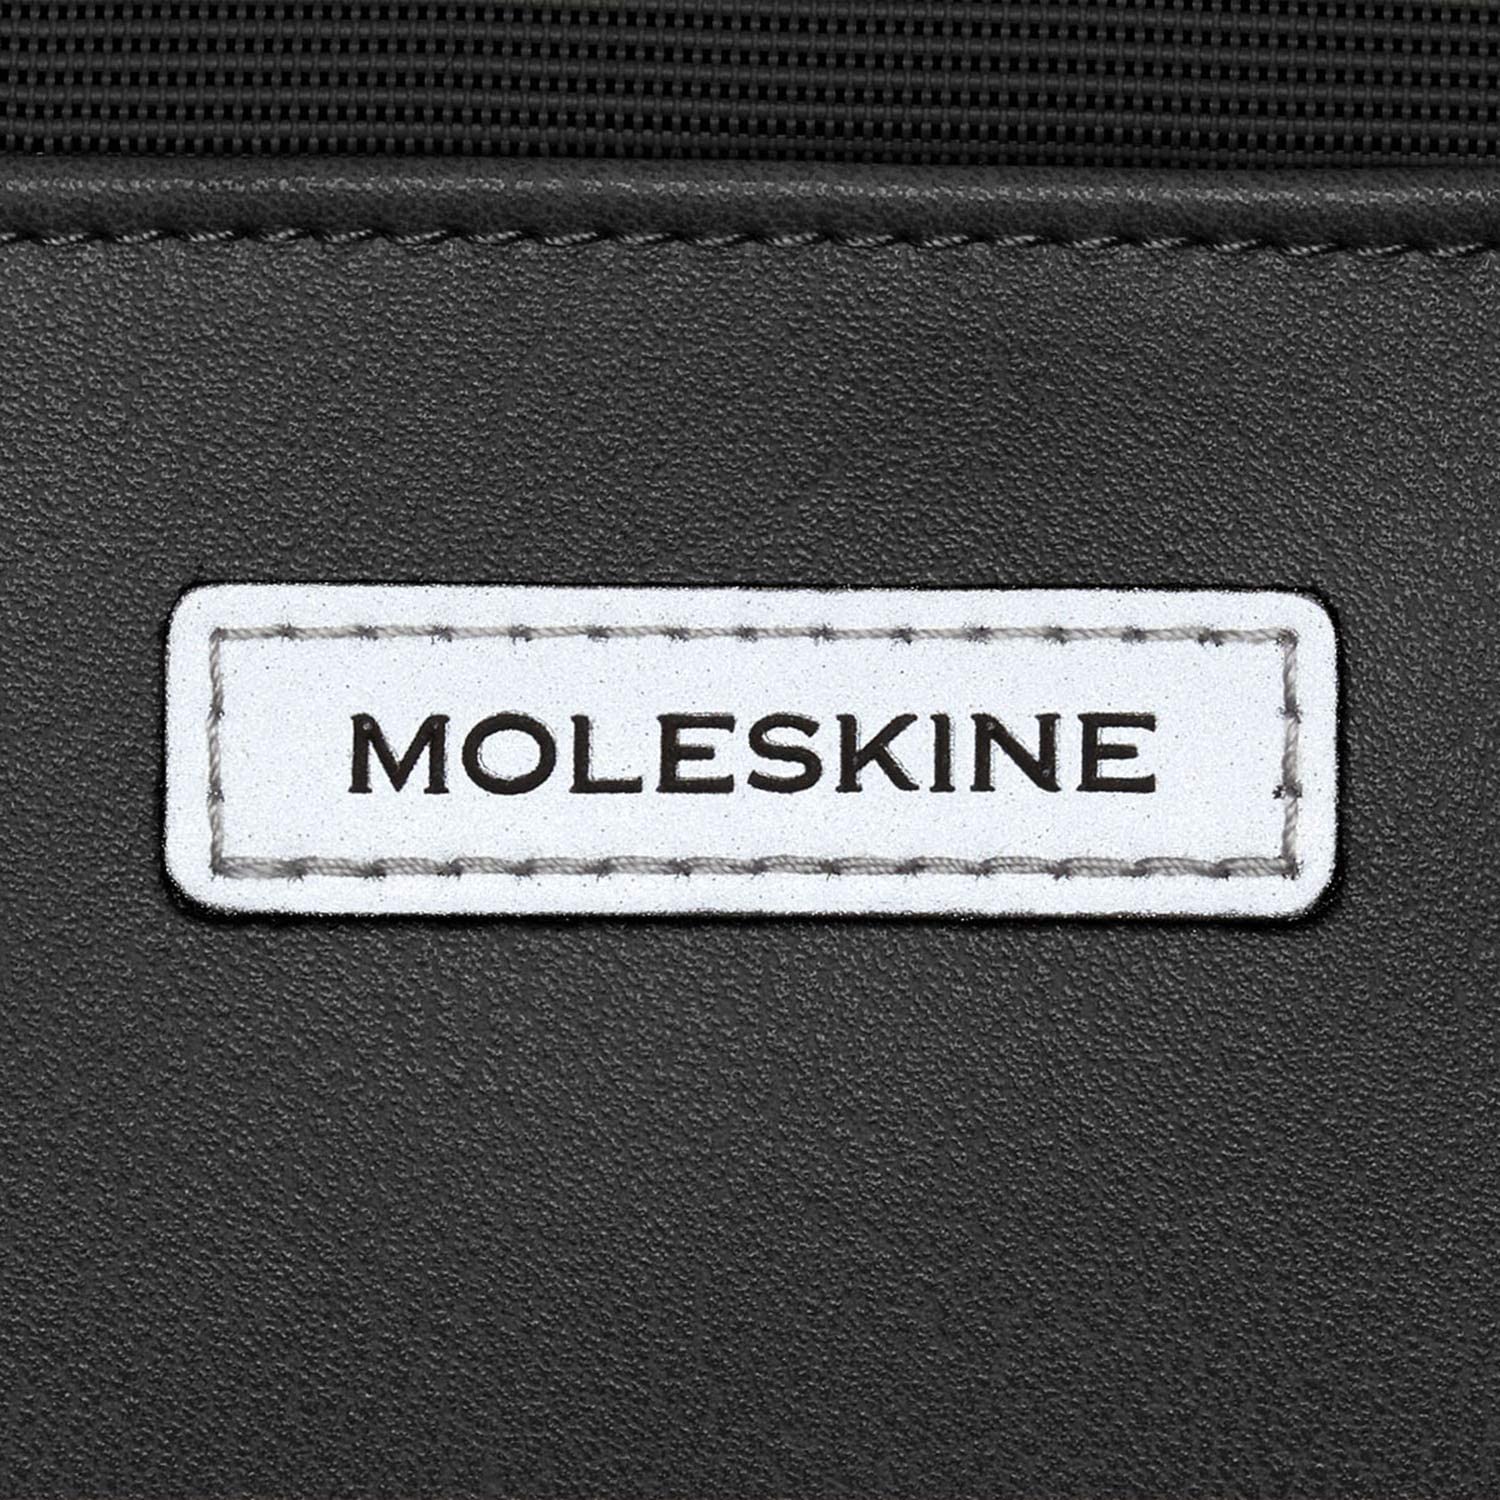 Moleskine（モレスキン）のリュック・バックパック」おすすめ6選